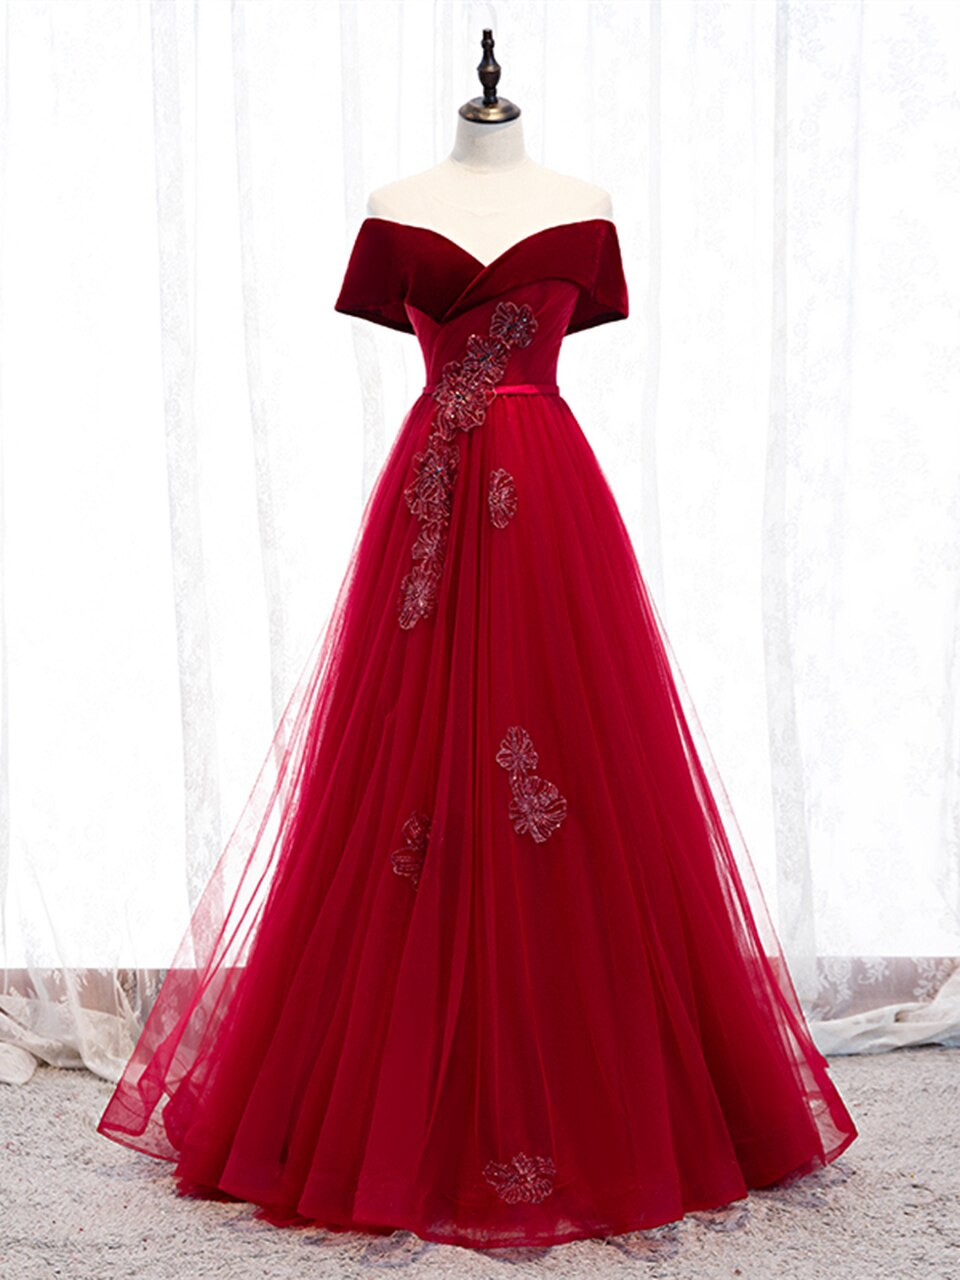 Off The Shoulder Burgundy Tulle Velvet Appliques Long Prom Dress,pl1291